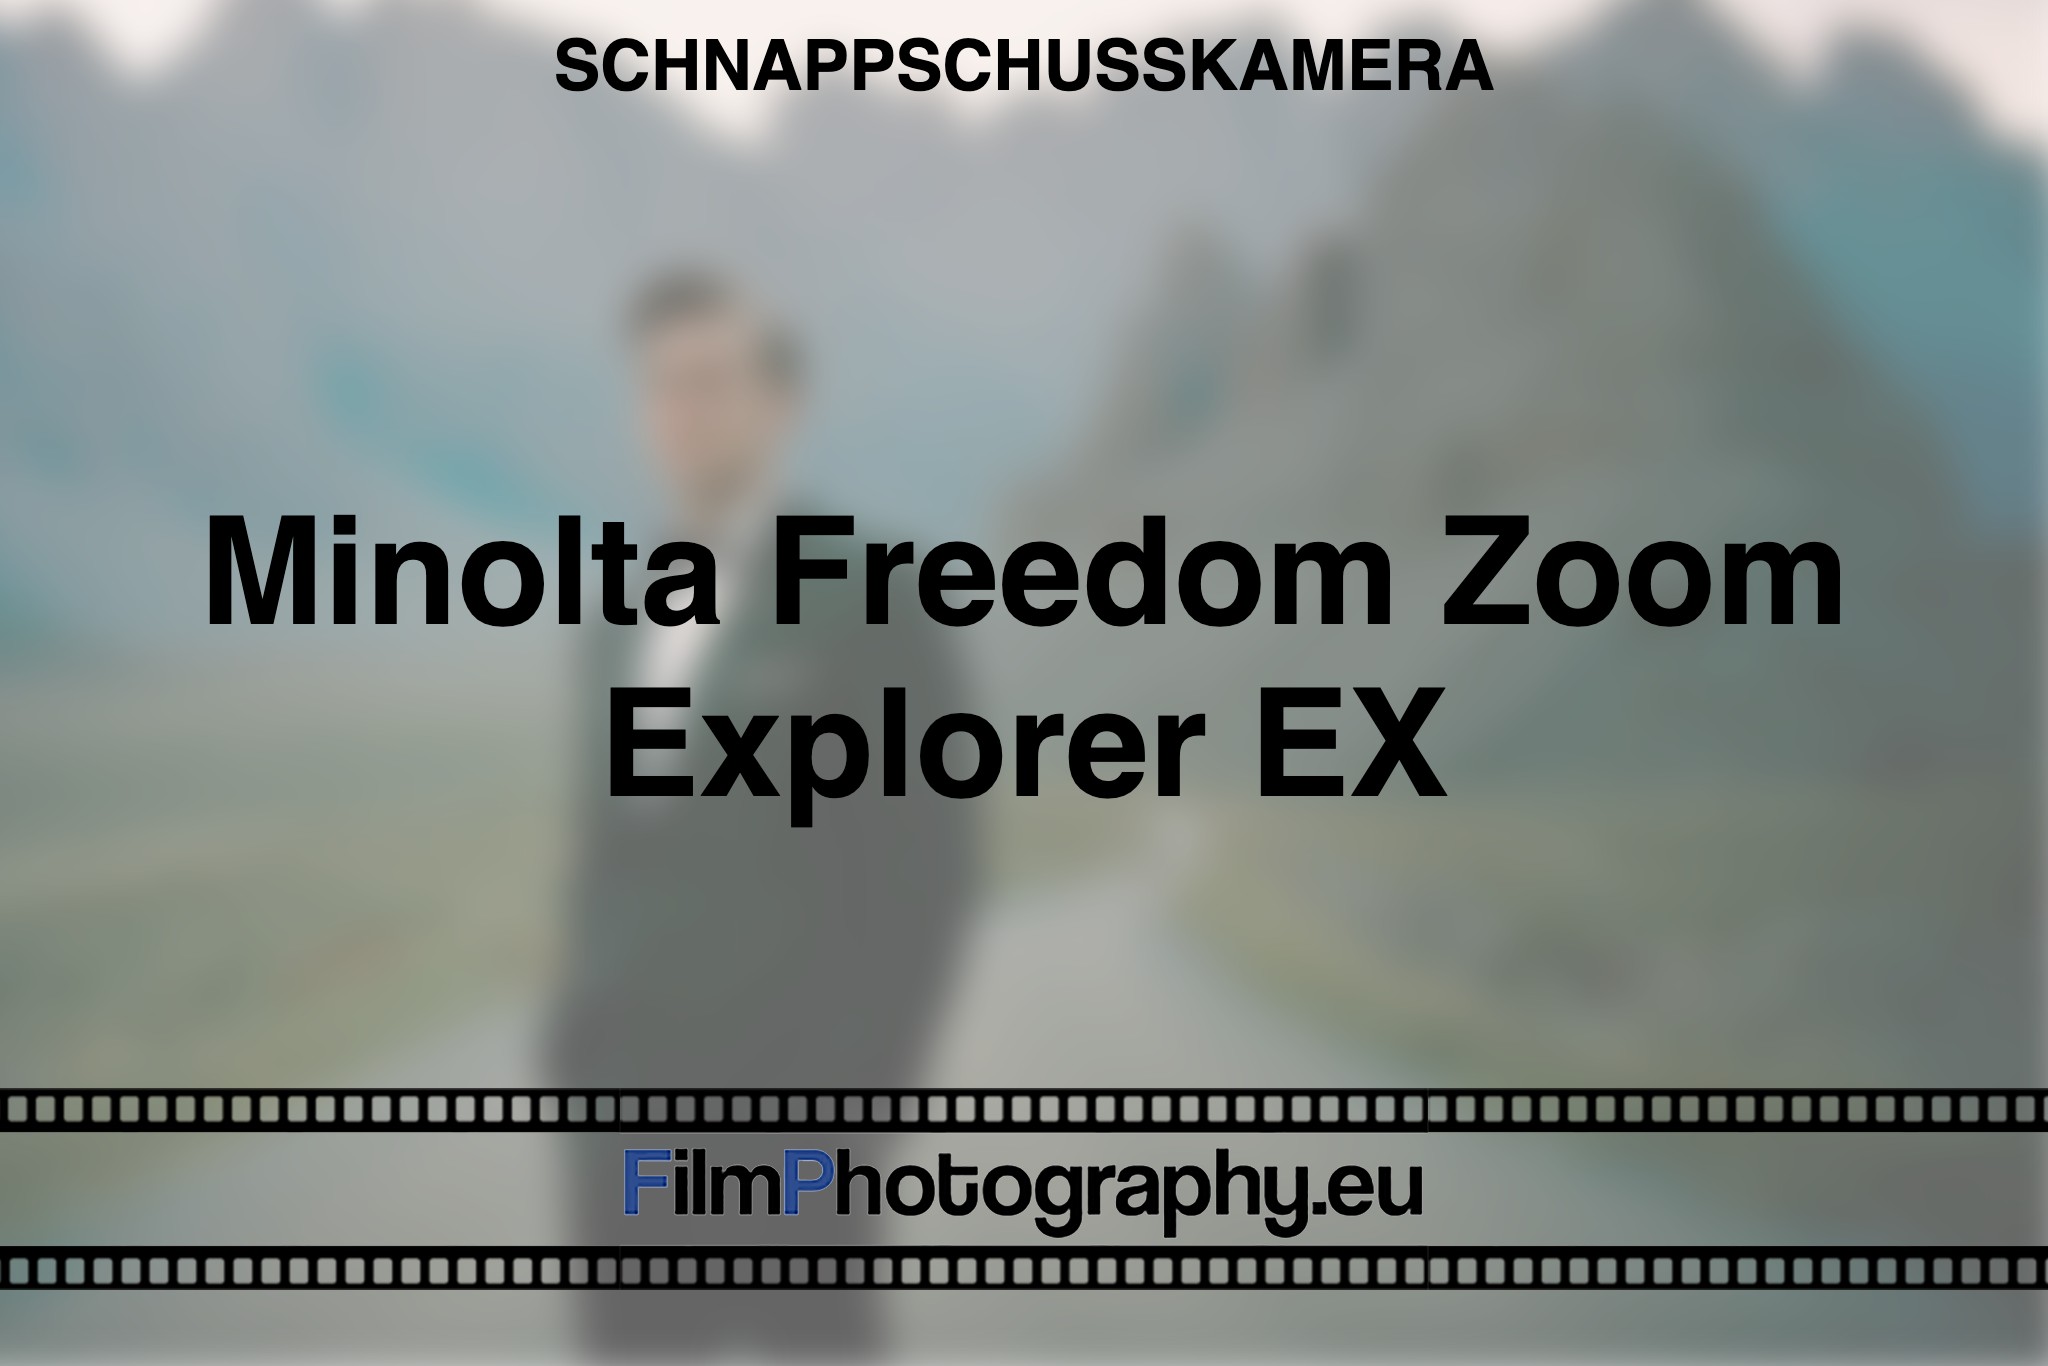 minolta-freedom-zoom-explorer-ex-schnappschusskamera-bnv